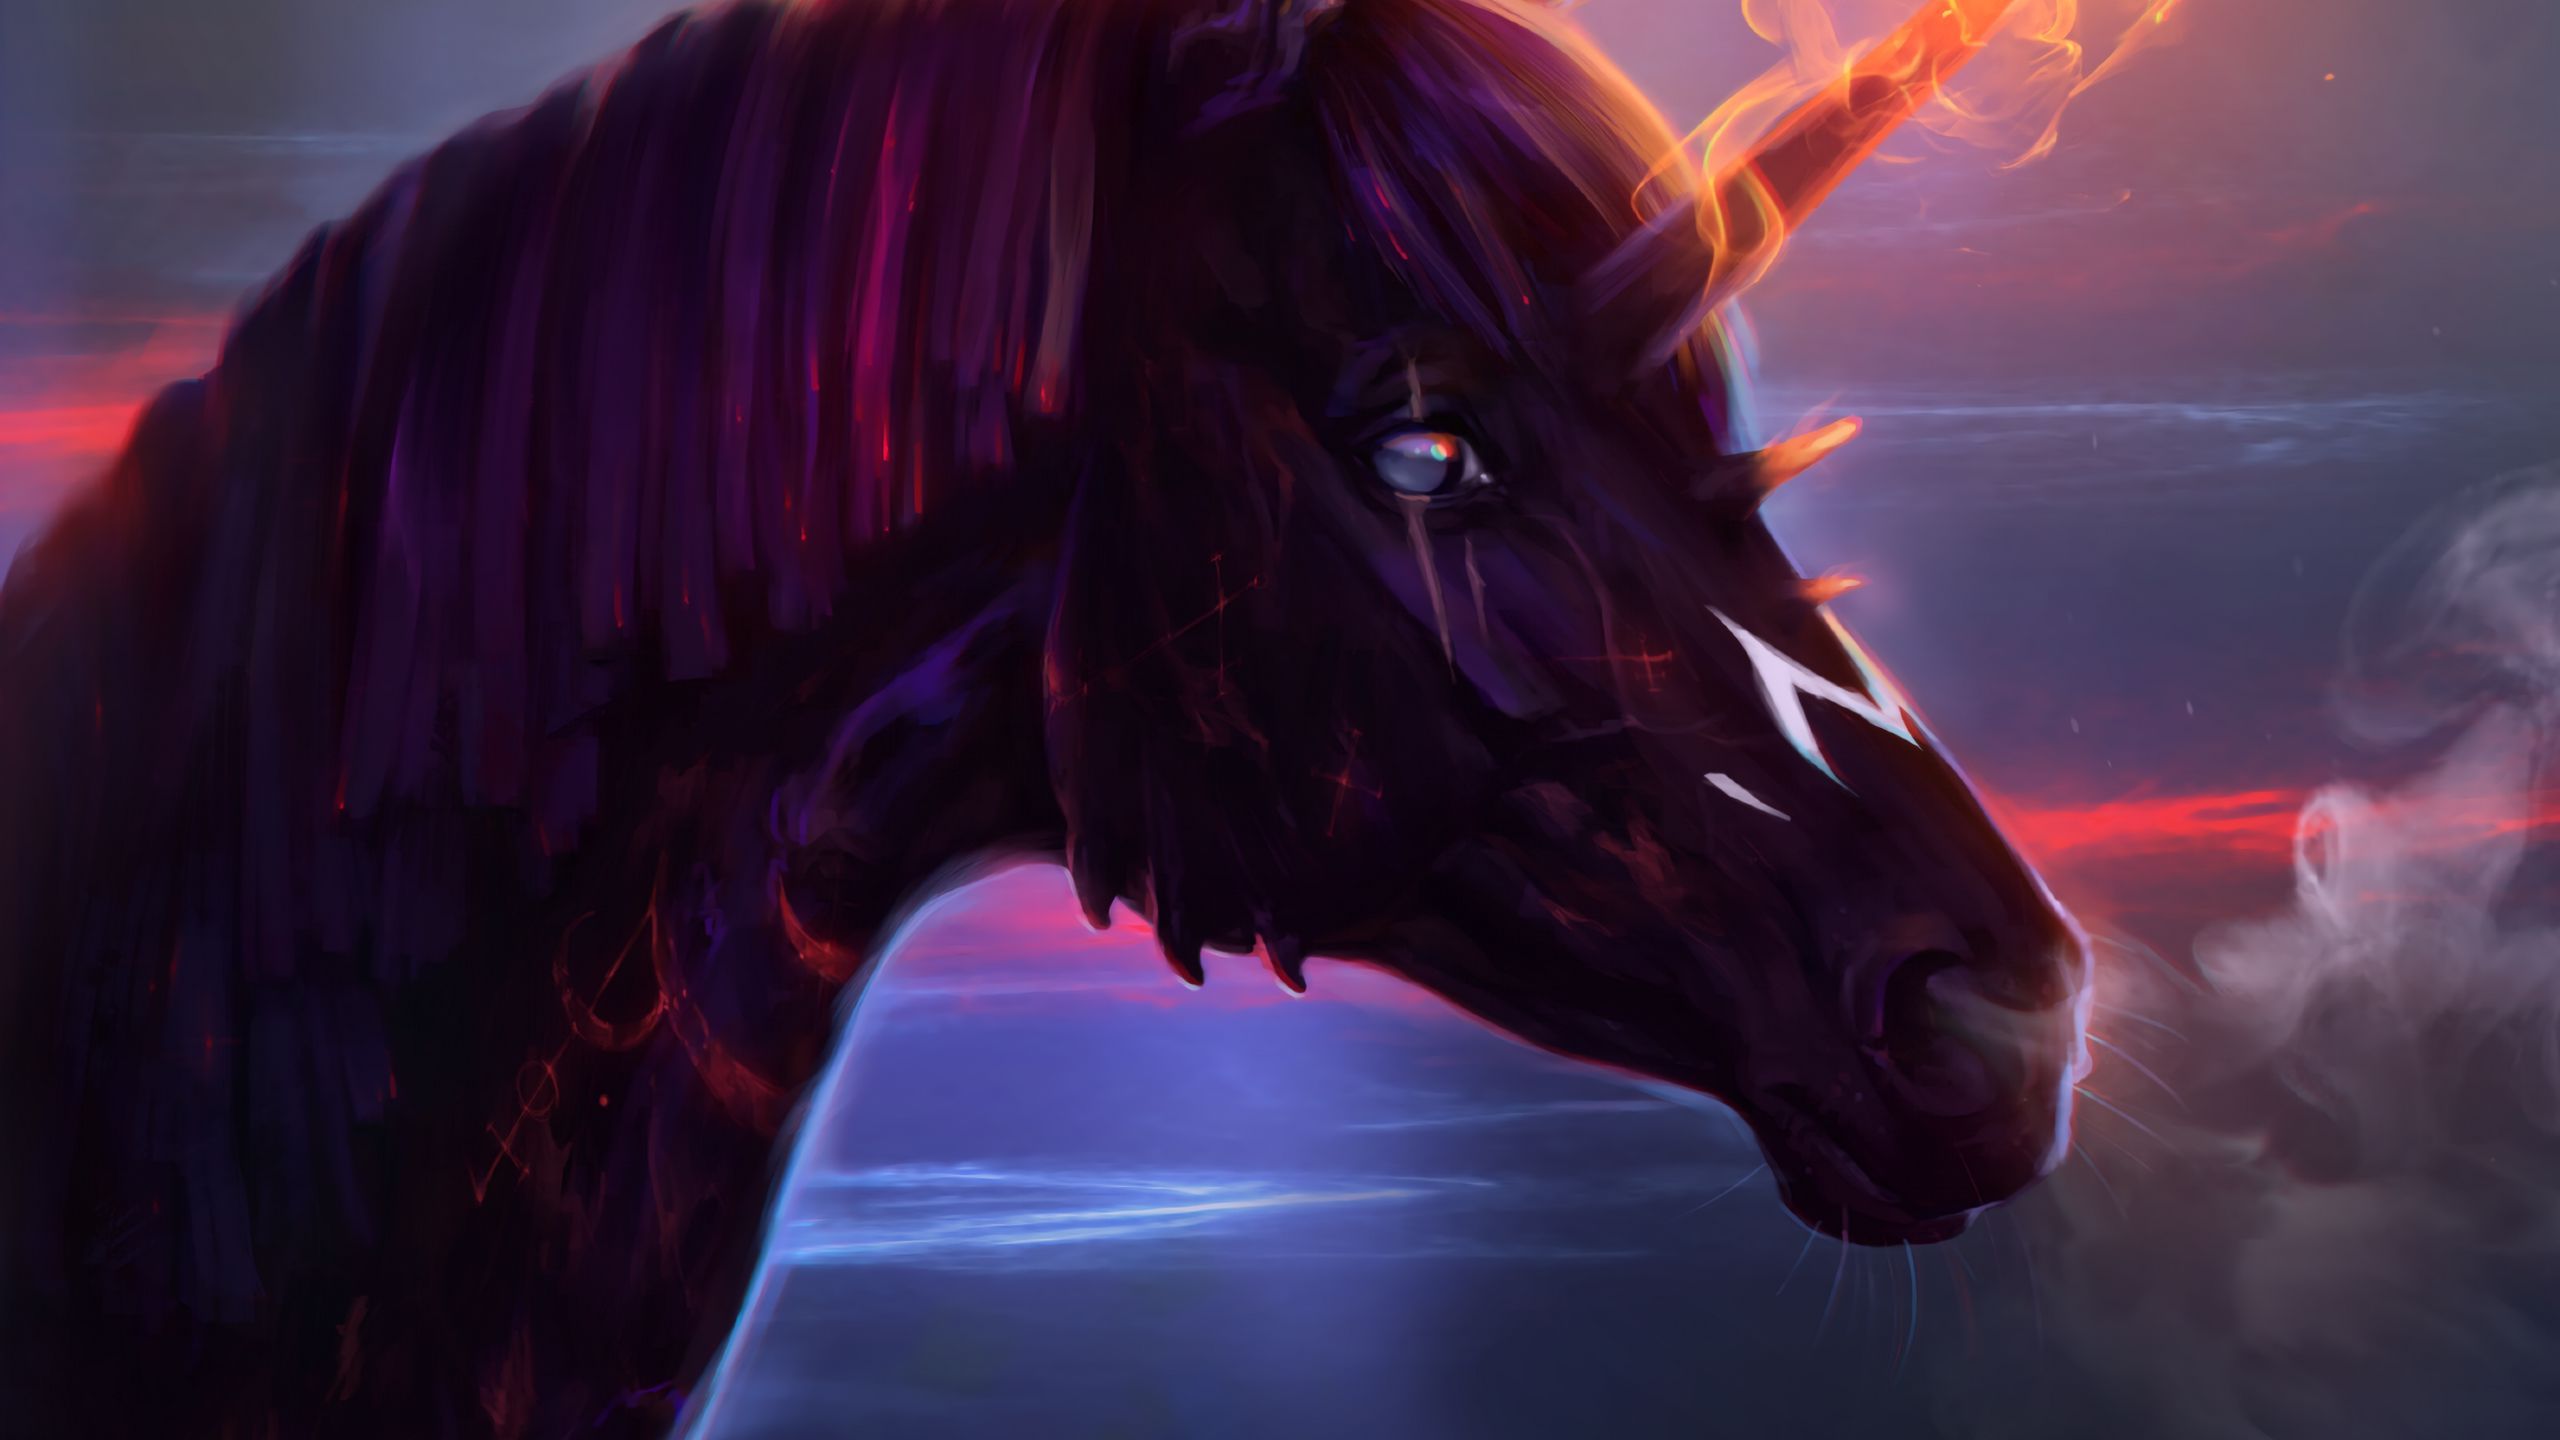 Download wallpaper 2560x1440 unicorn, horse, art, fire widescreen 16:9 HD background